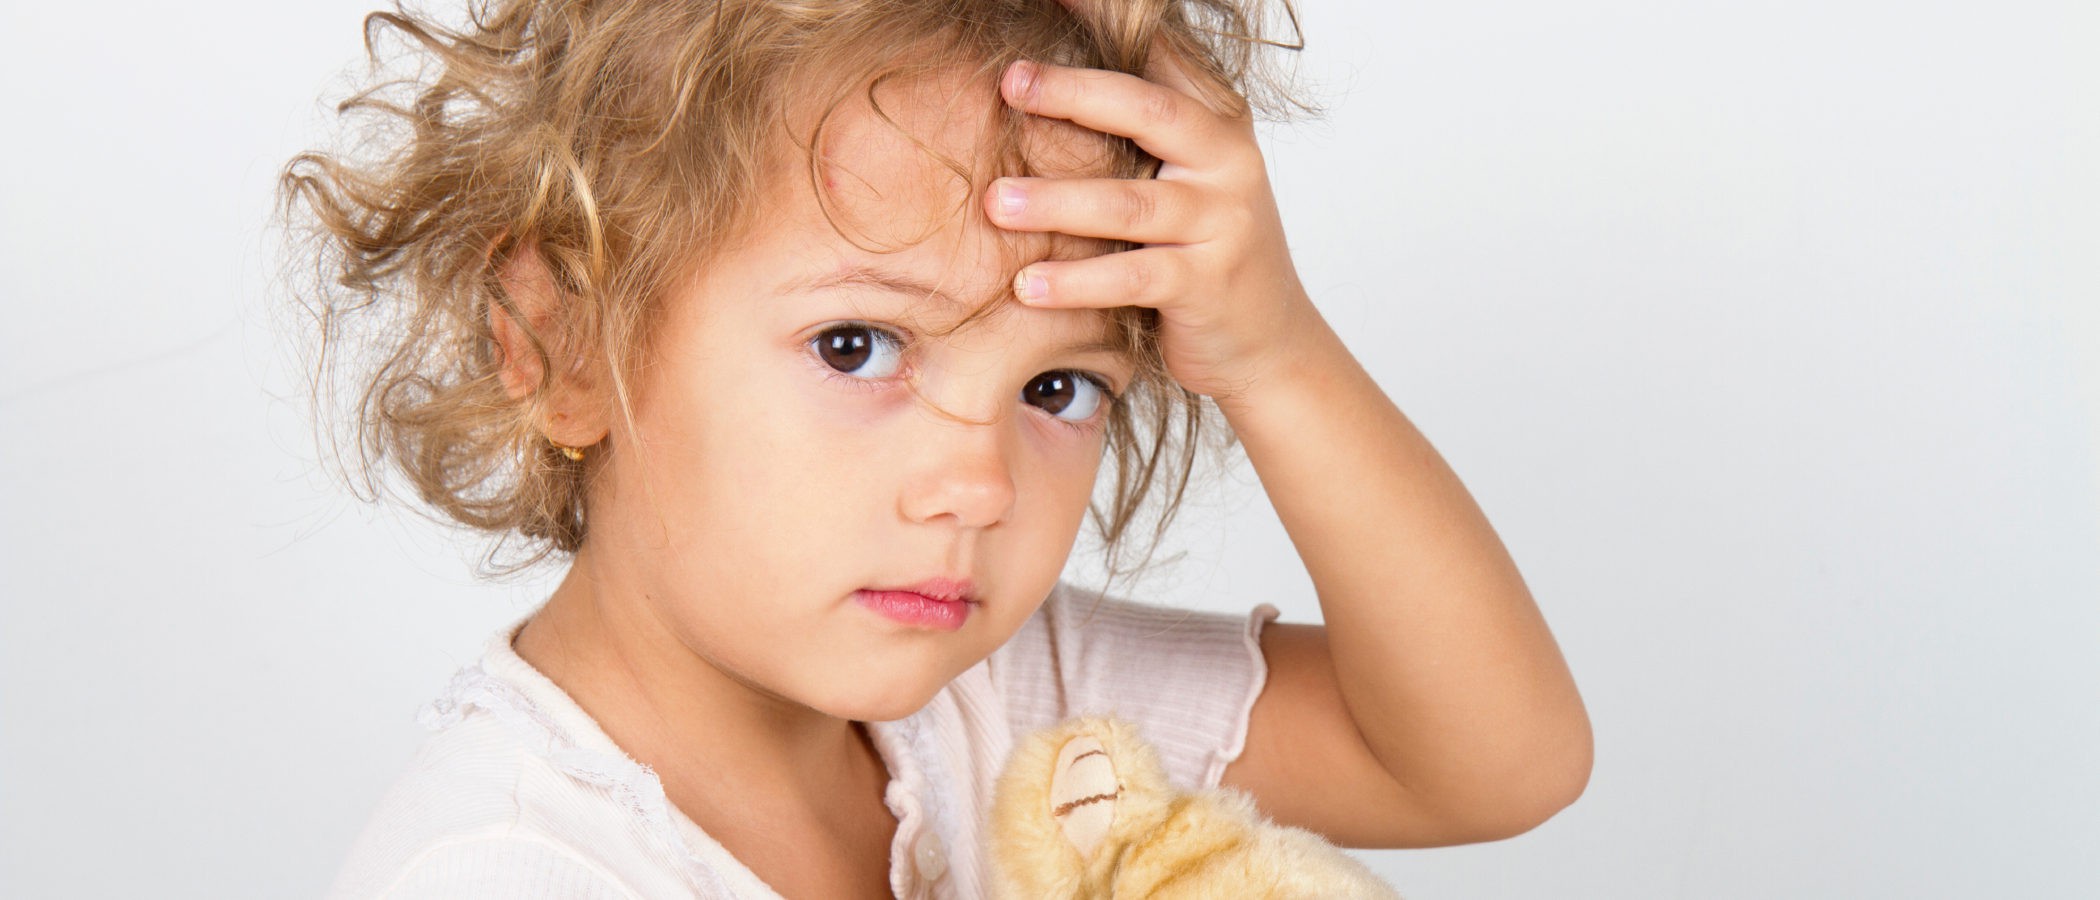 Encopresis, el problema de incontinencia de heces en niños